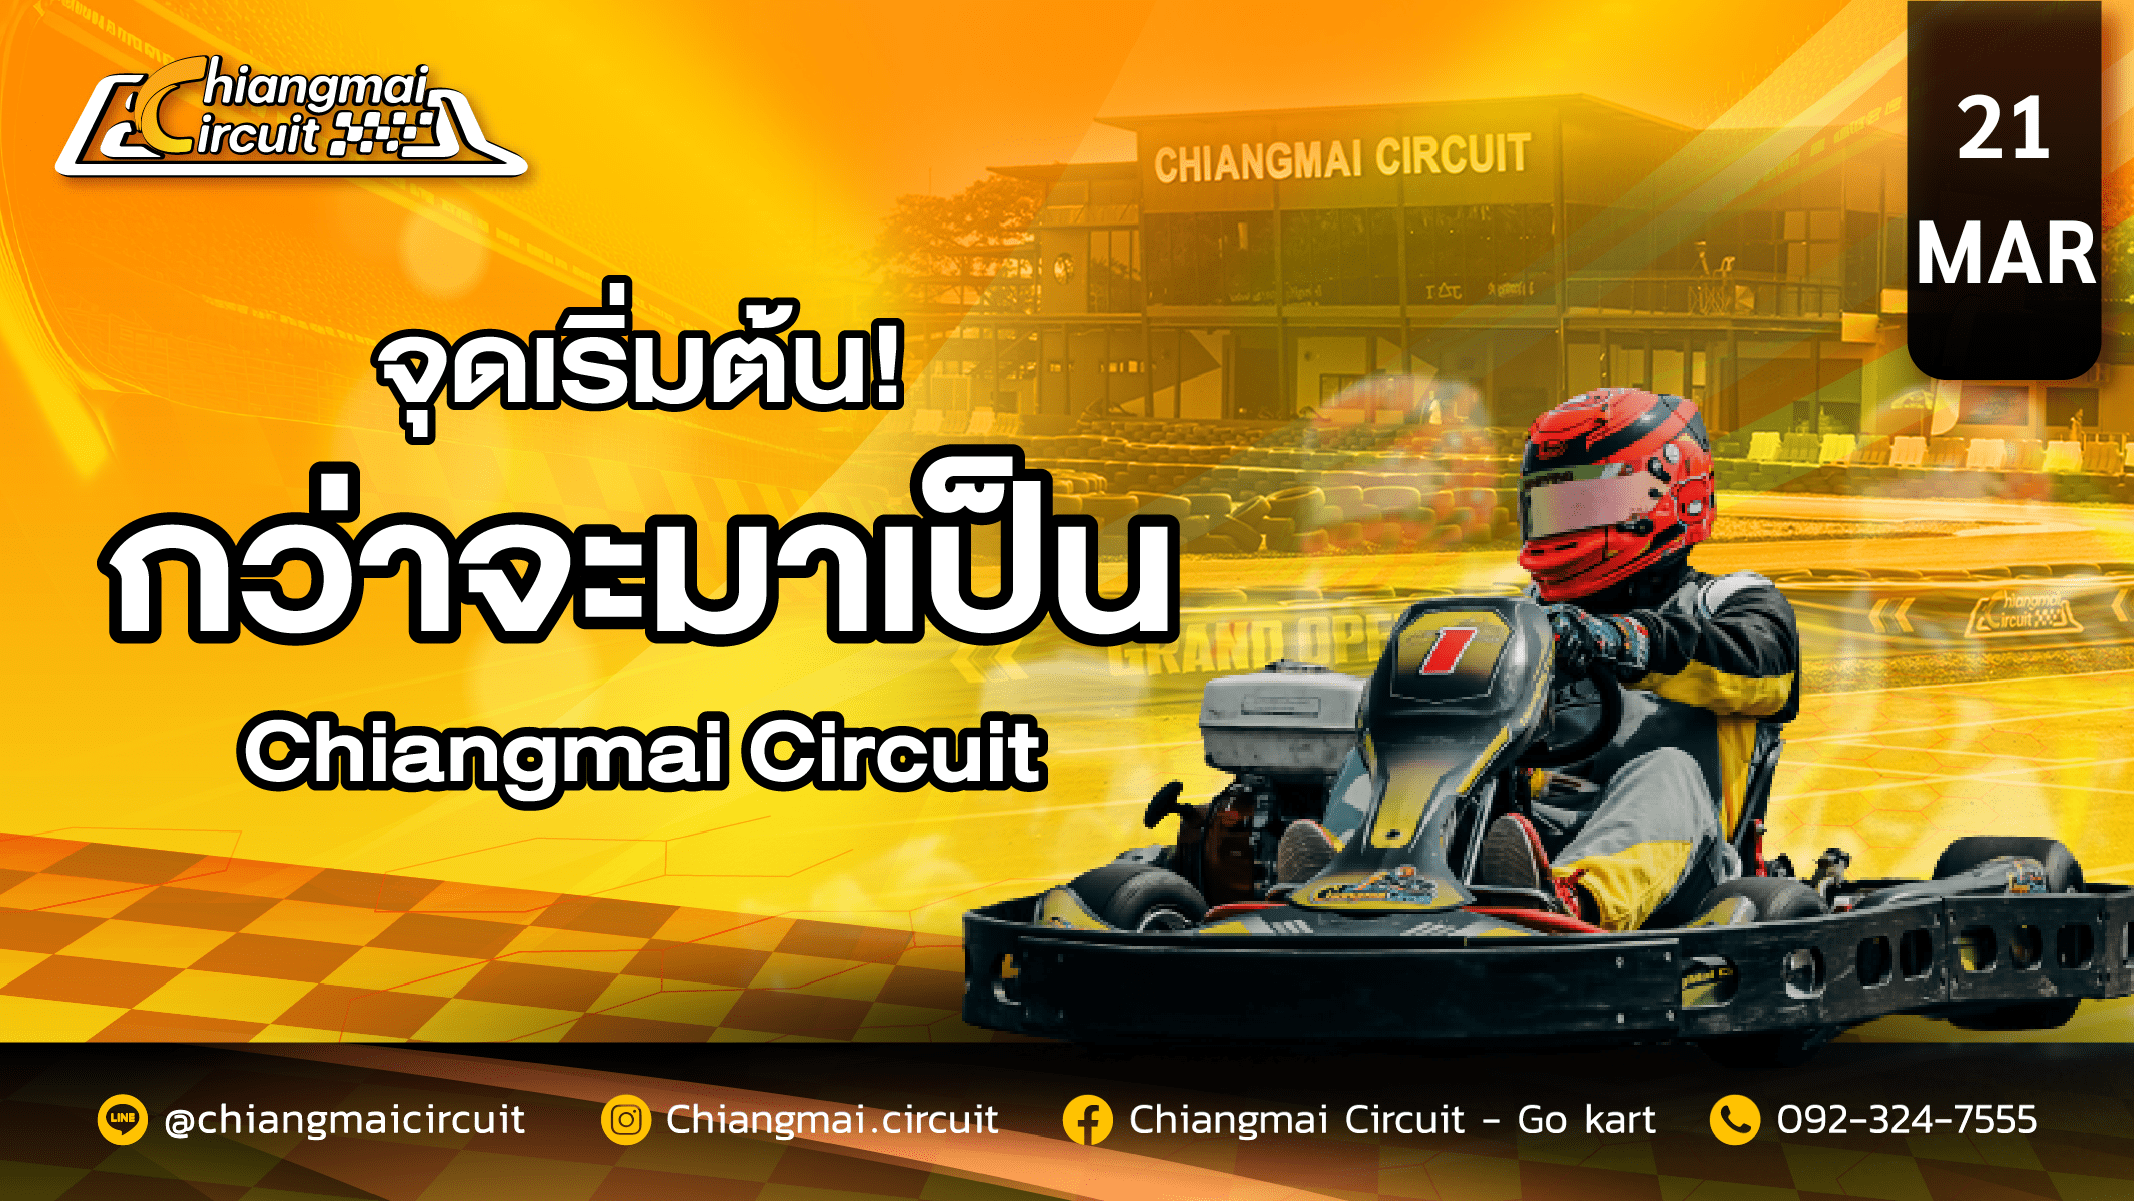 เจาะลึก! จุดเริ่มต้นของการเป็น Chiangmai Circuit